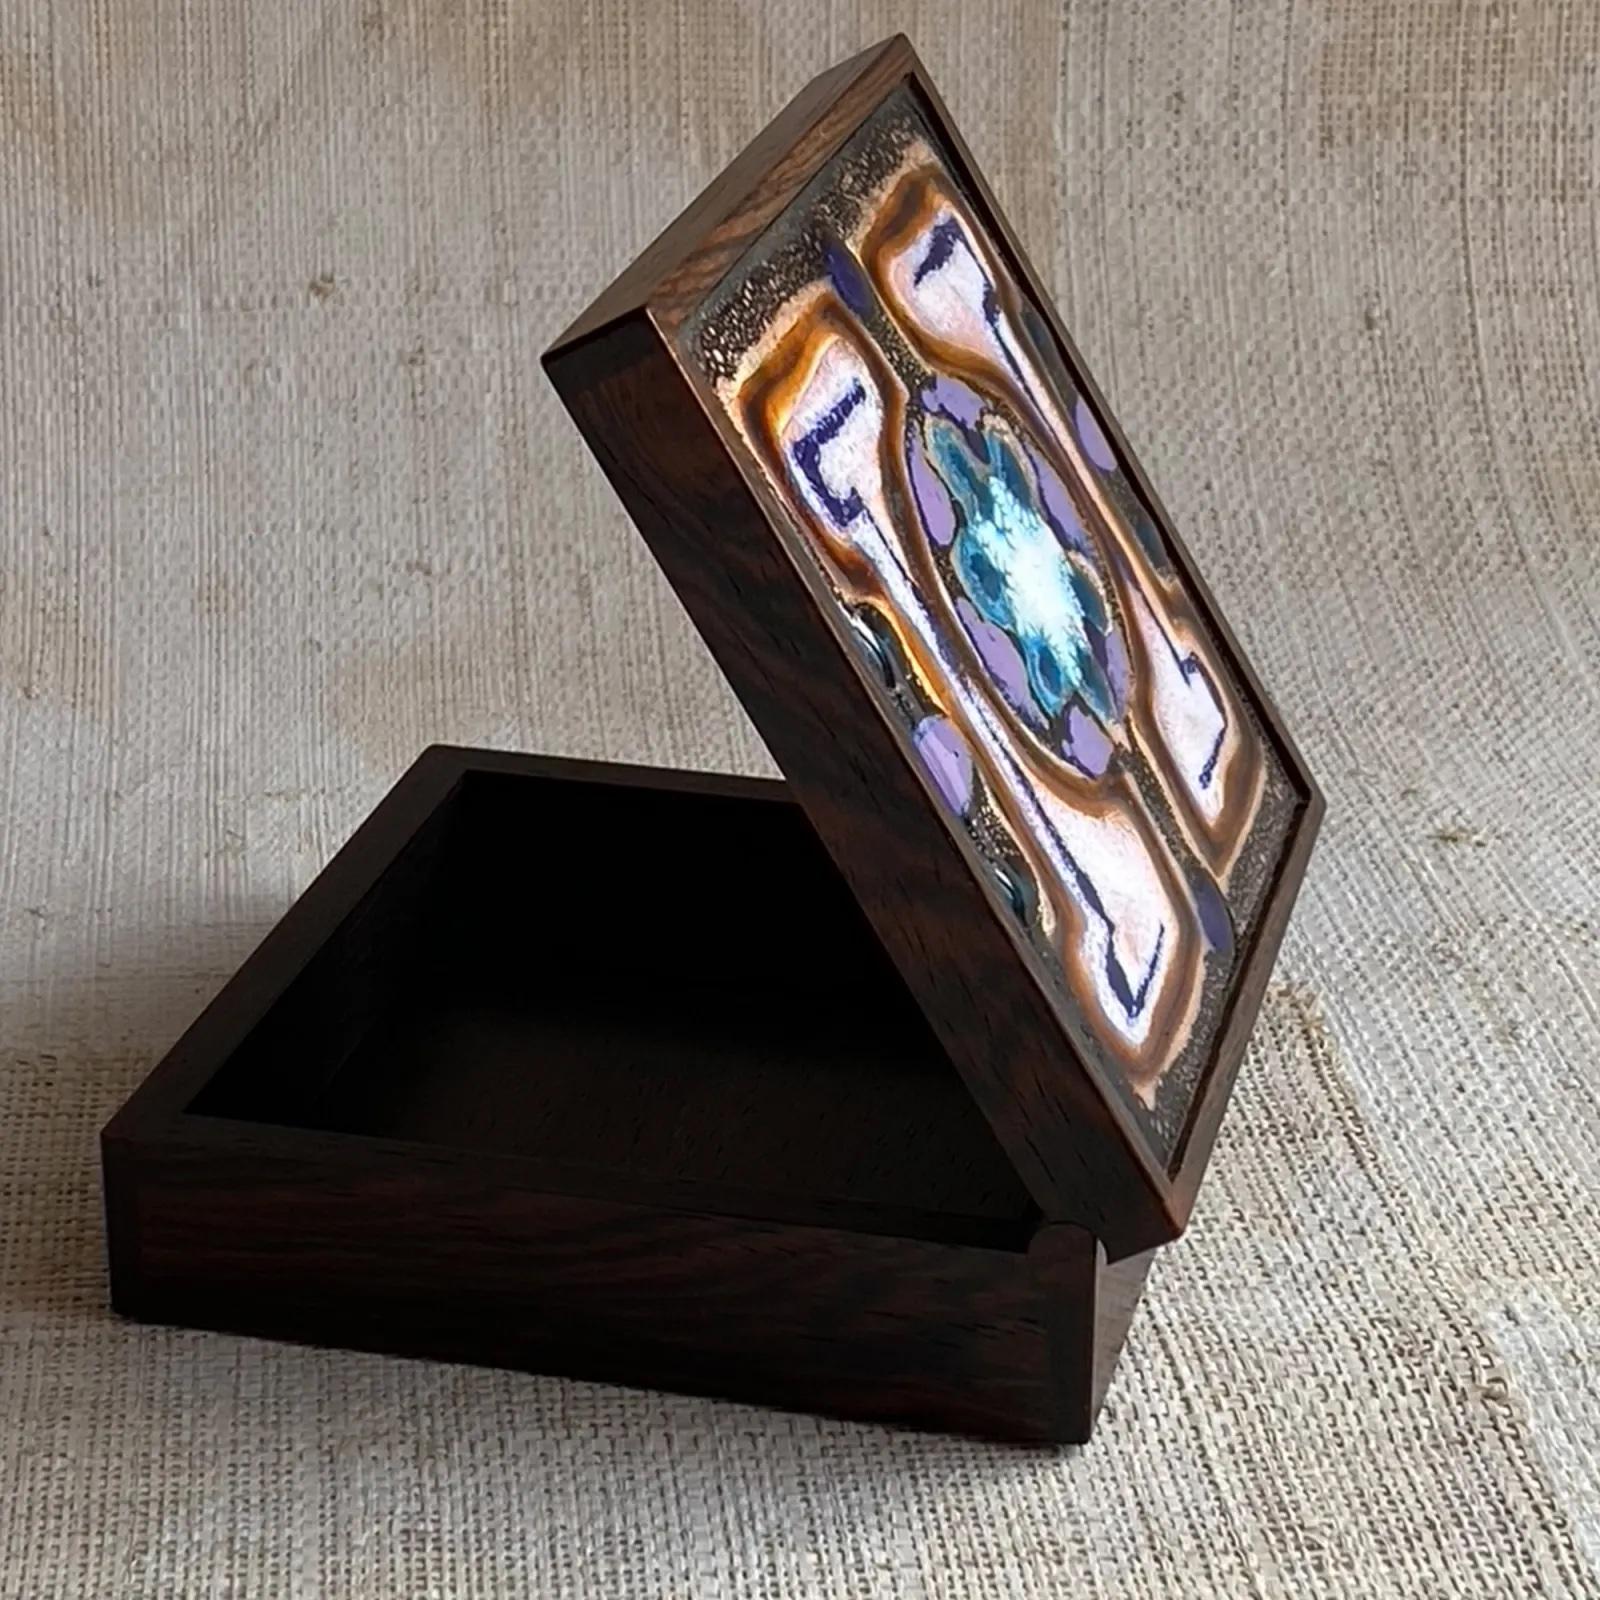 Boîte en bois de rose de très haute qualité, ornée d'un panneau décoratif en émail sur cuivre.
Marqué 